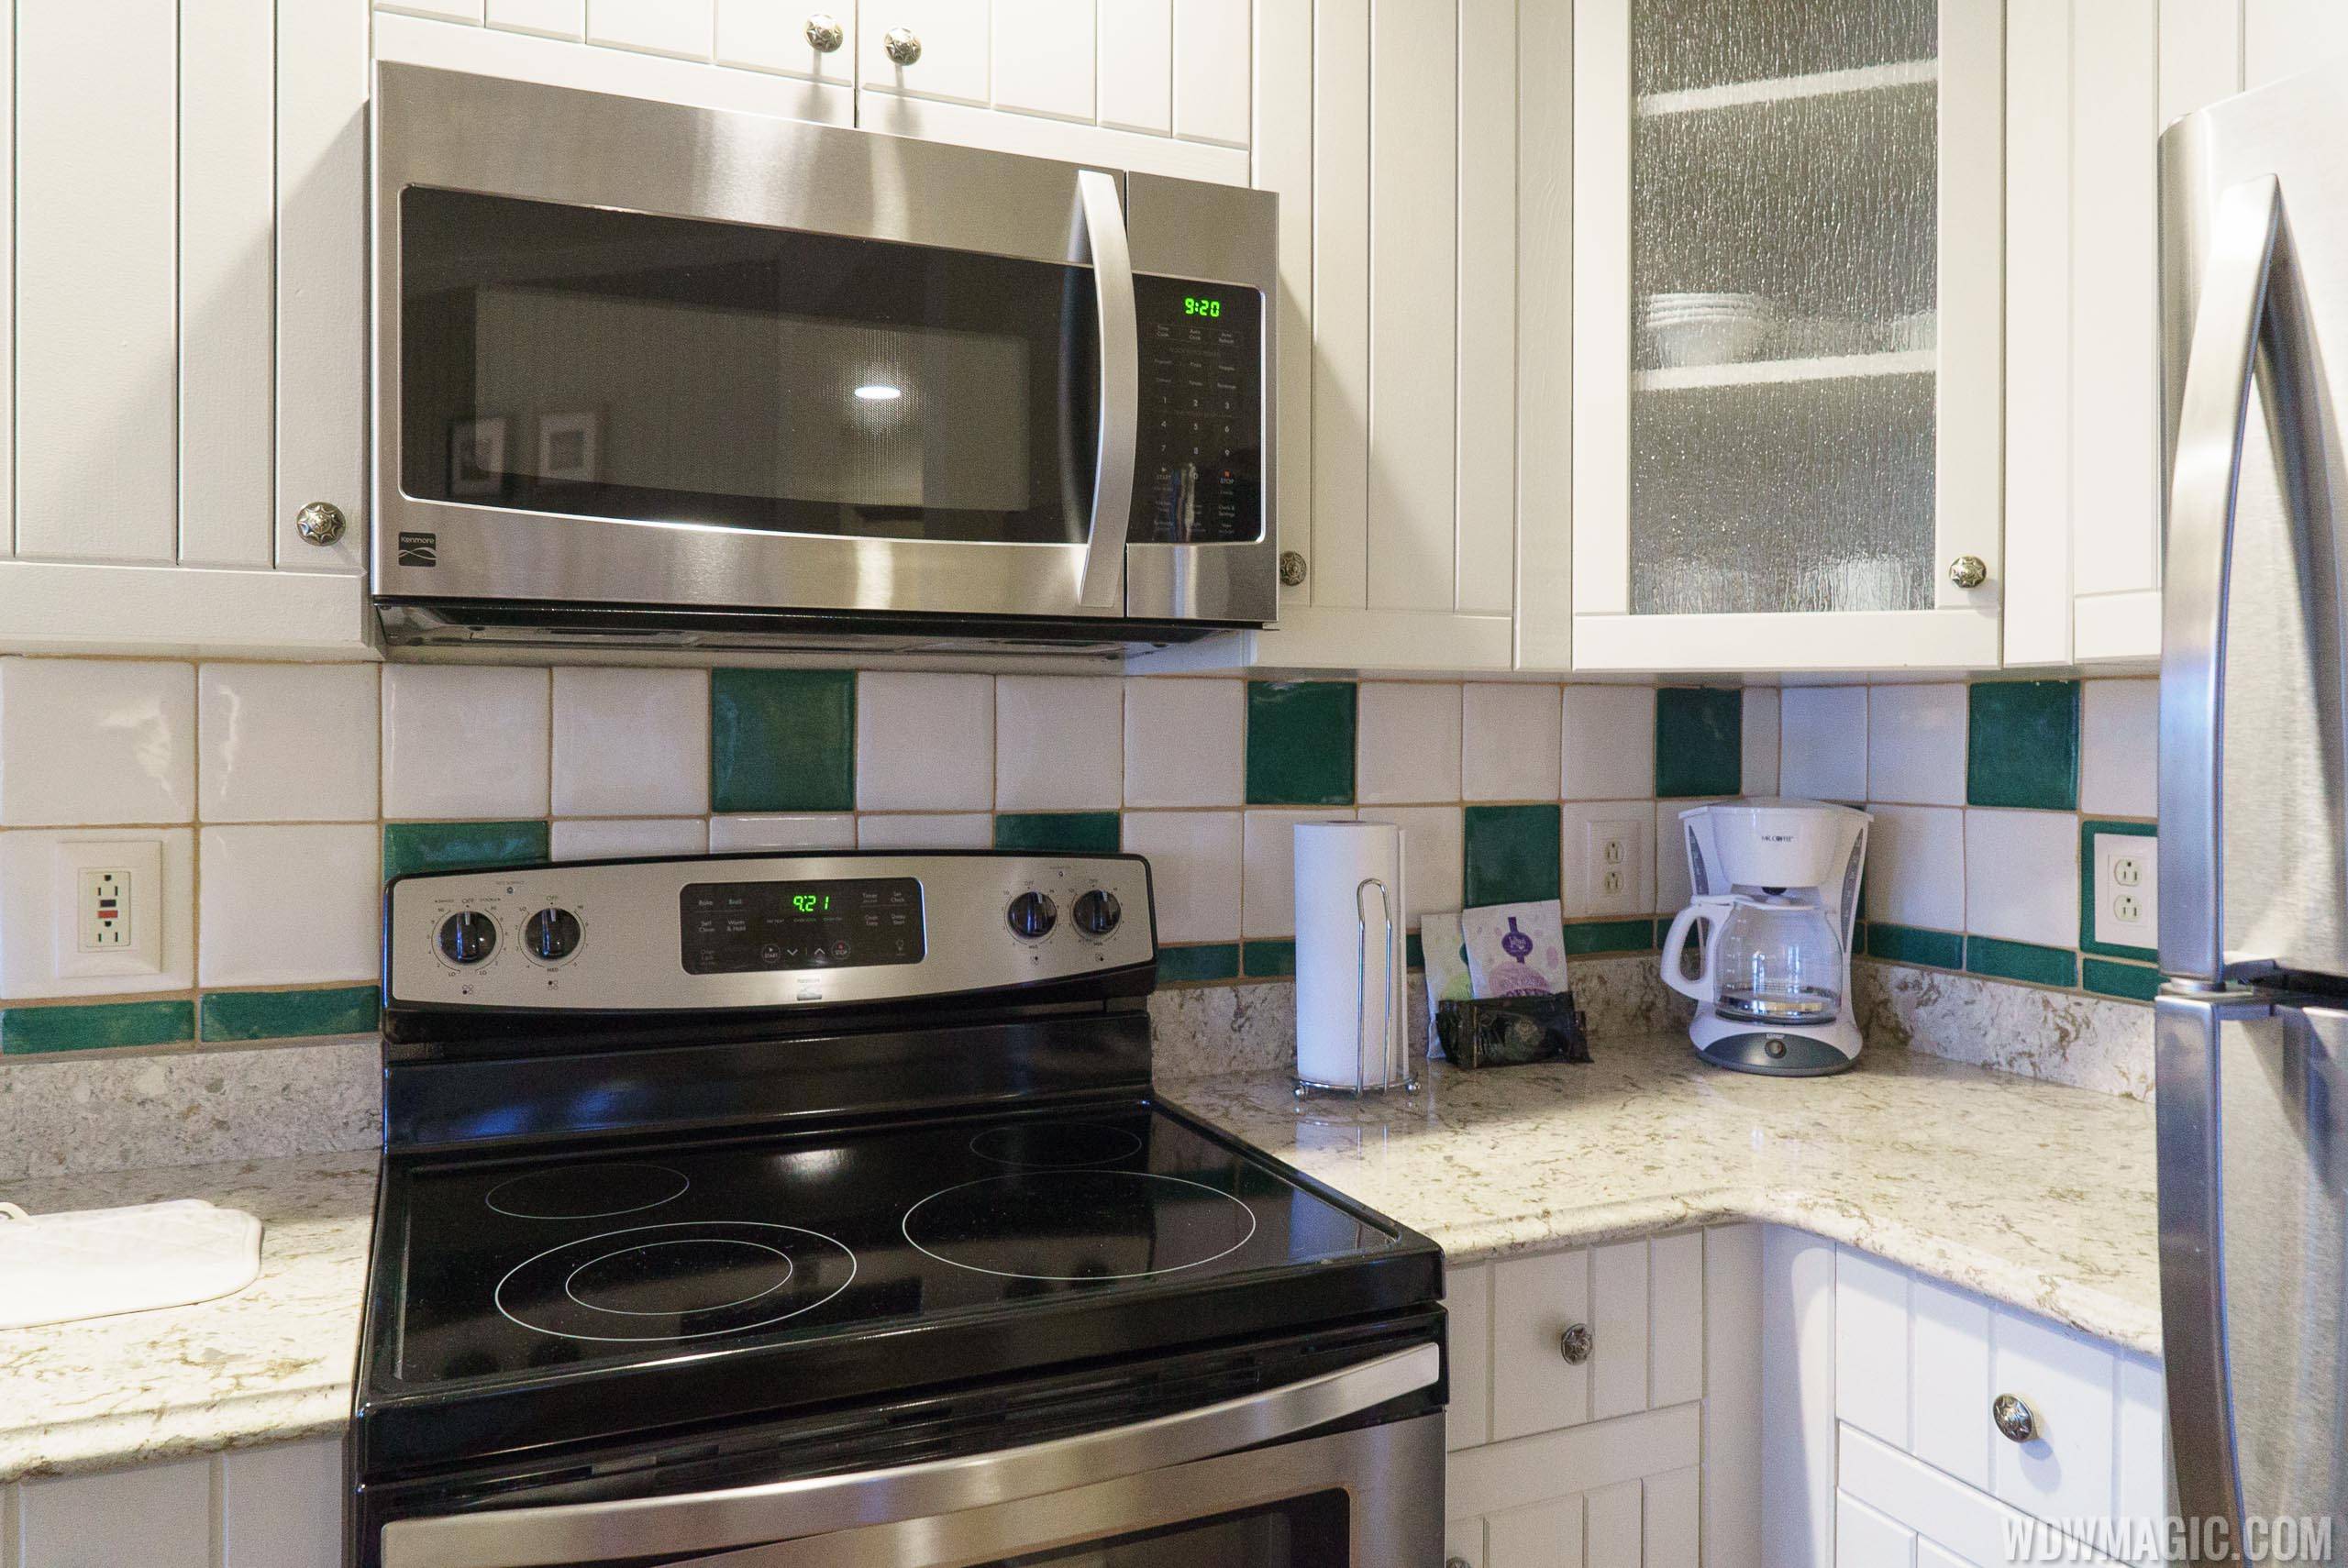 Disney's Hilton Head Island Resort - 2 Bedroom Suite kitchen